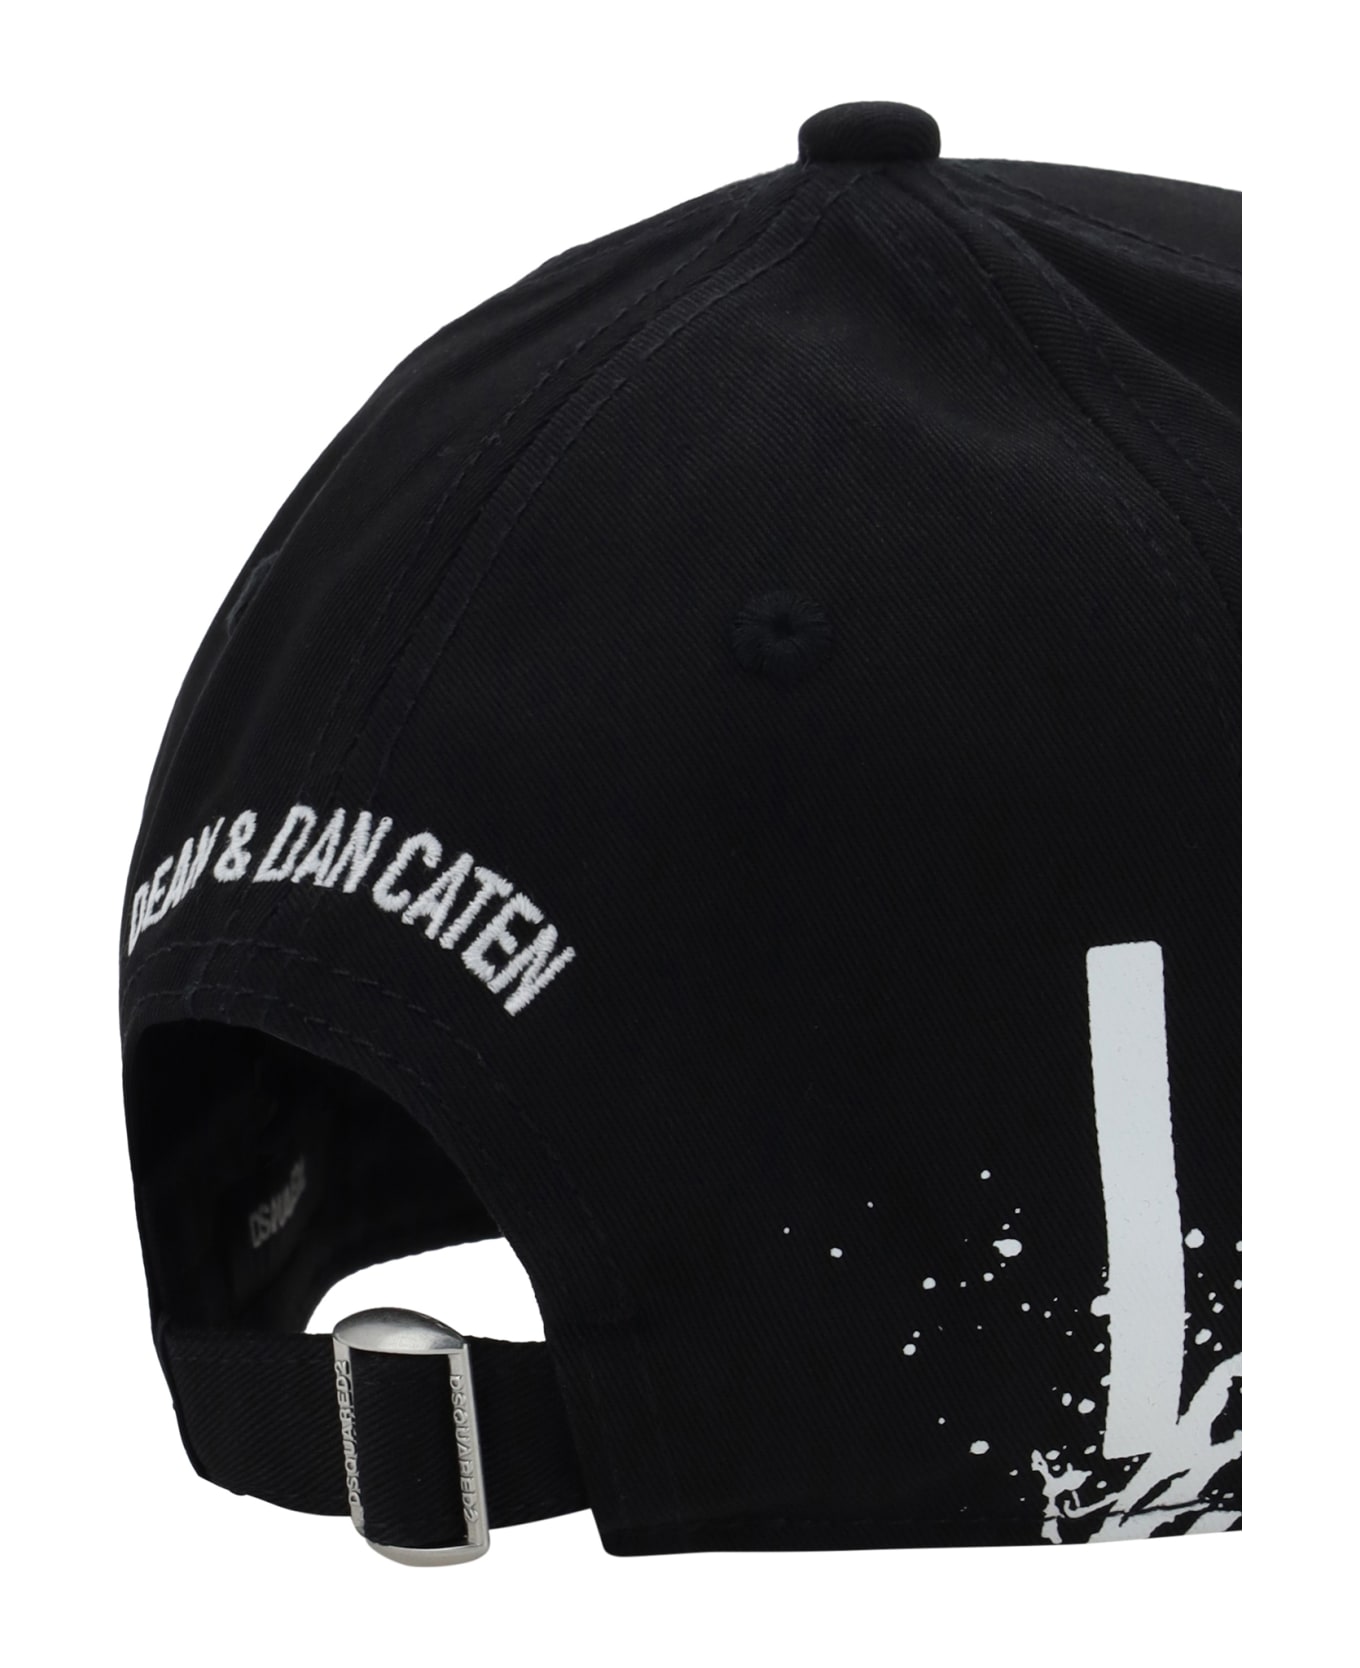 Dsquared2 Black Cotton Hat - M063